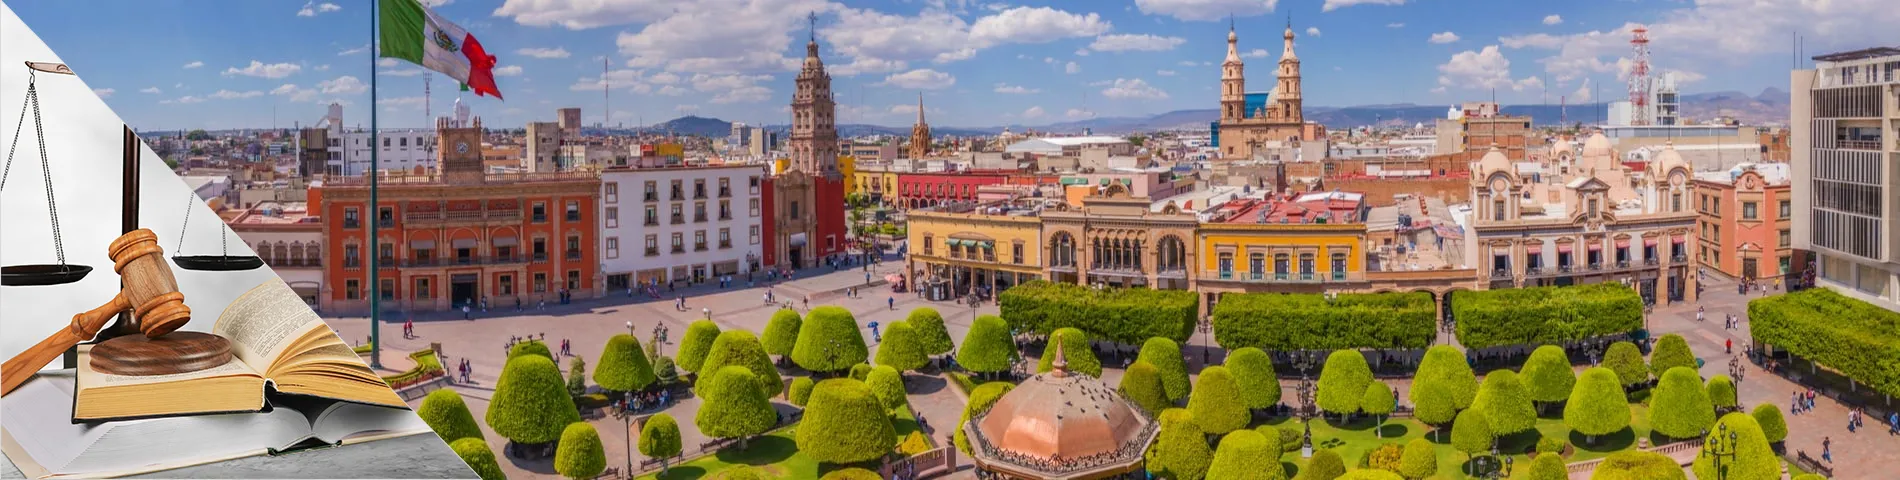 Guanajuato - Espagnol juridique